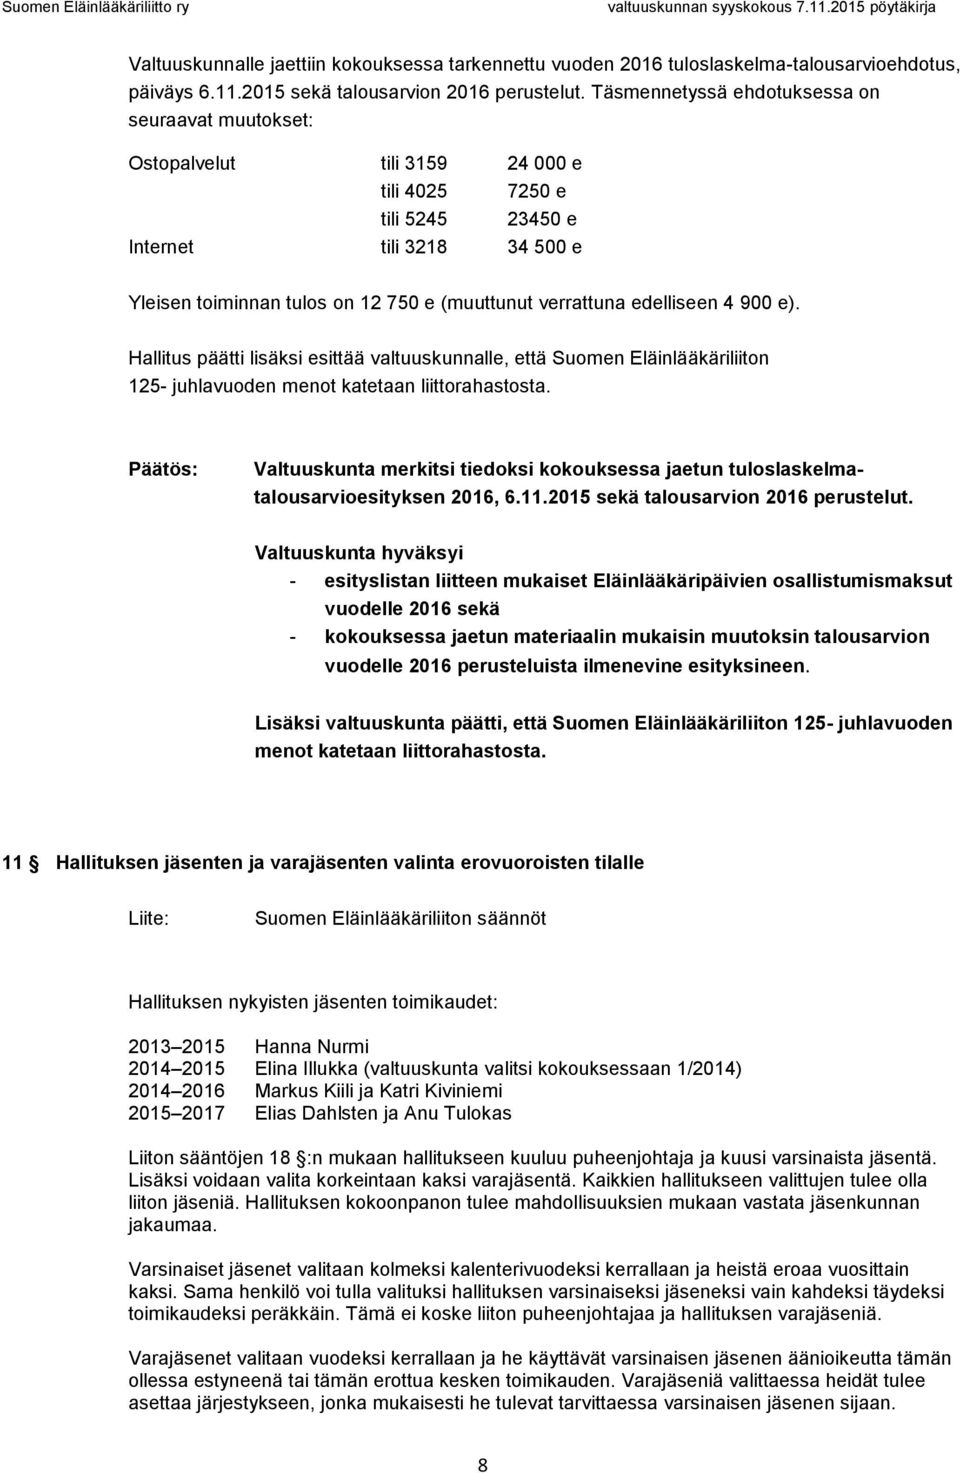 verrattuna edelliseen 4 900 e). Hallitus päätti lisäksi esittää valtuuskunnalle, että Suomen Eläinlääkäriliiton 125- juhlavuoden menot katetaan liittorahastosta.